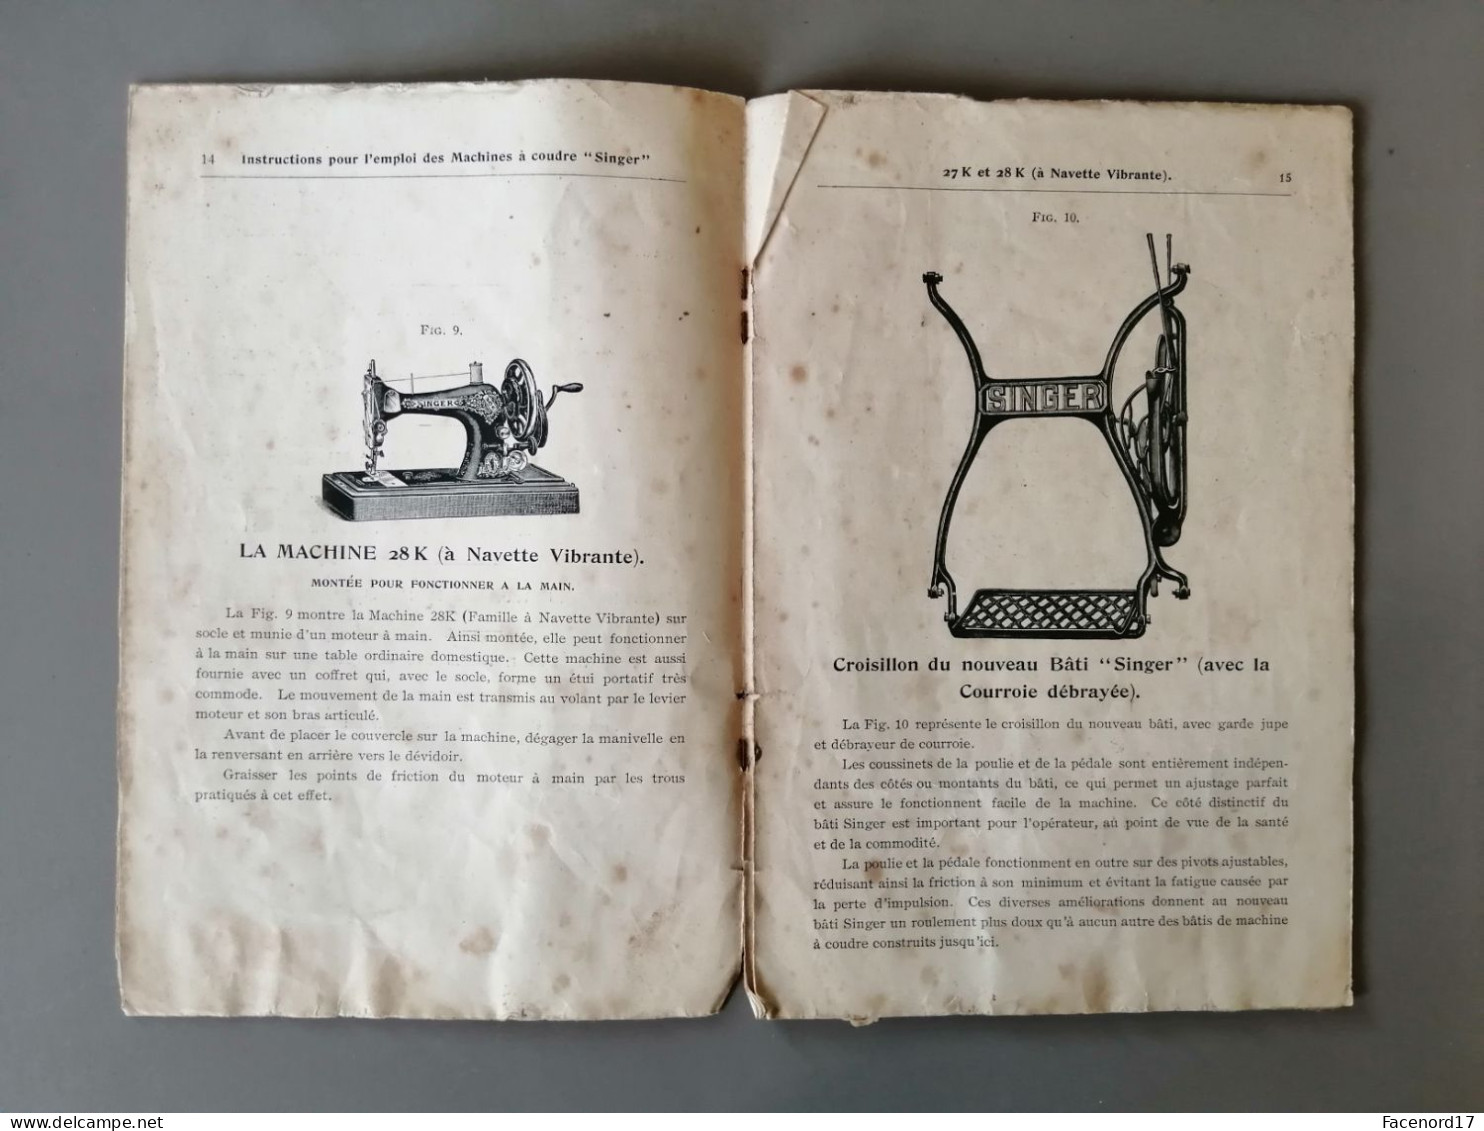 Instructions Pour L'emploi Des Machines à Coudre " Singer " 27K Et 28K à Navette Vibrante 1909 - Machines